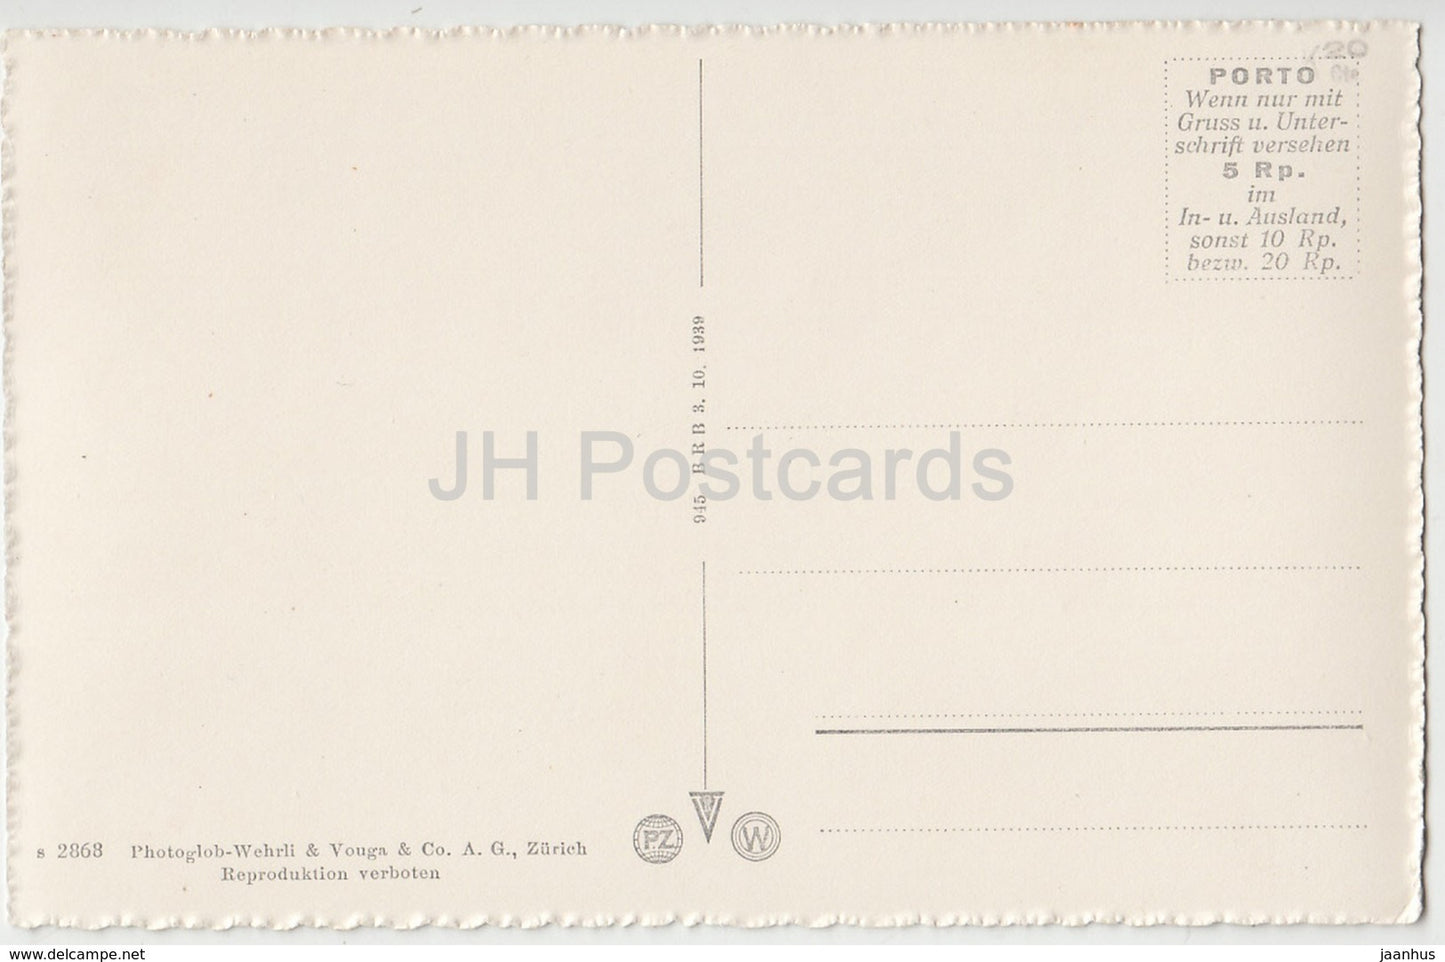 Axenstrasse am Vierwaldstattersee mit Fluelen und Bristenstock - 2868 - Suisse - cartes postales anciennes - inutilisées